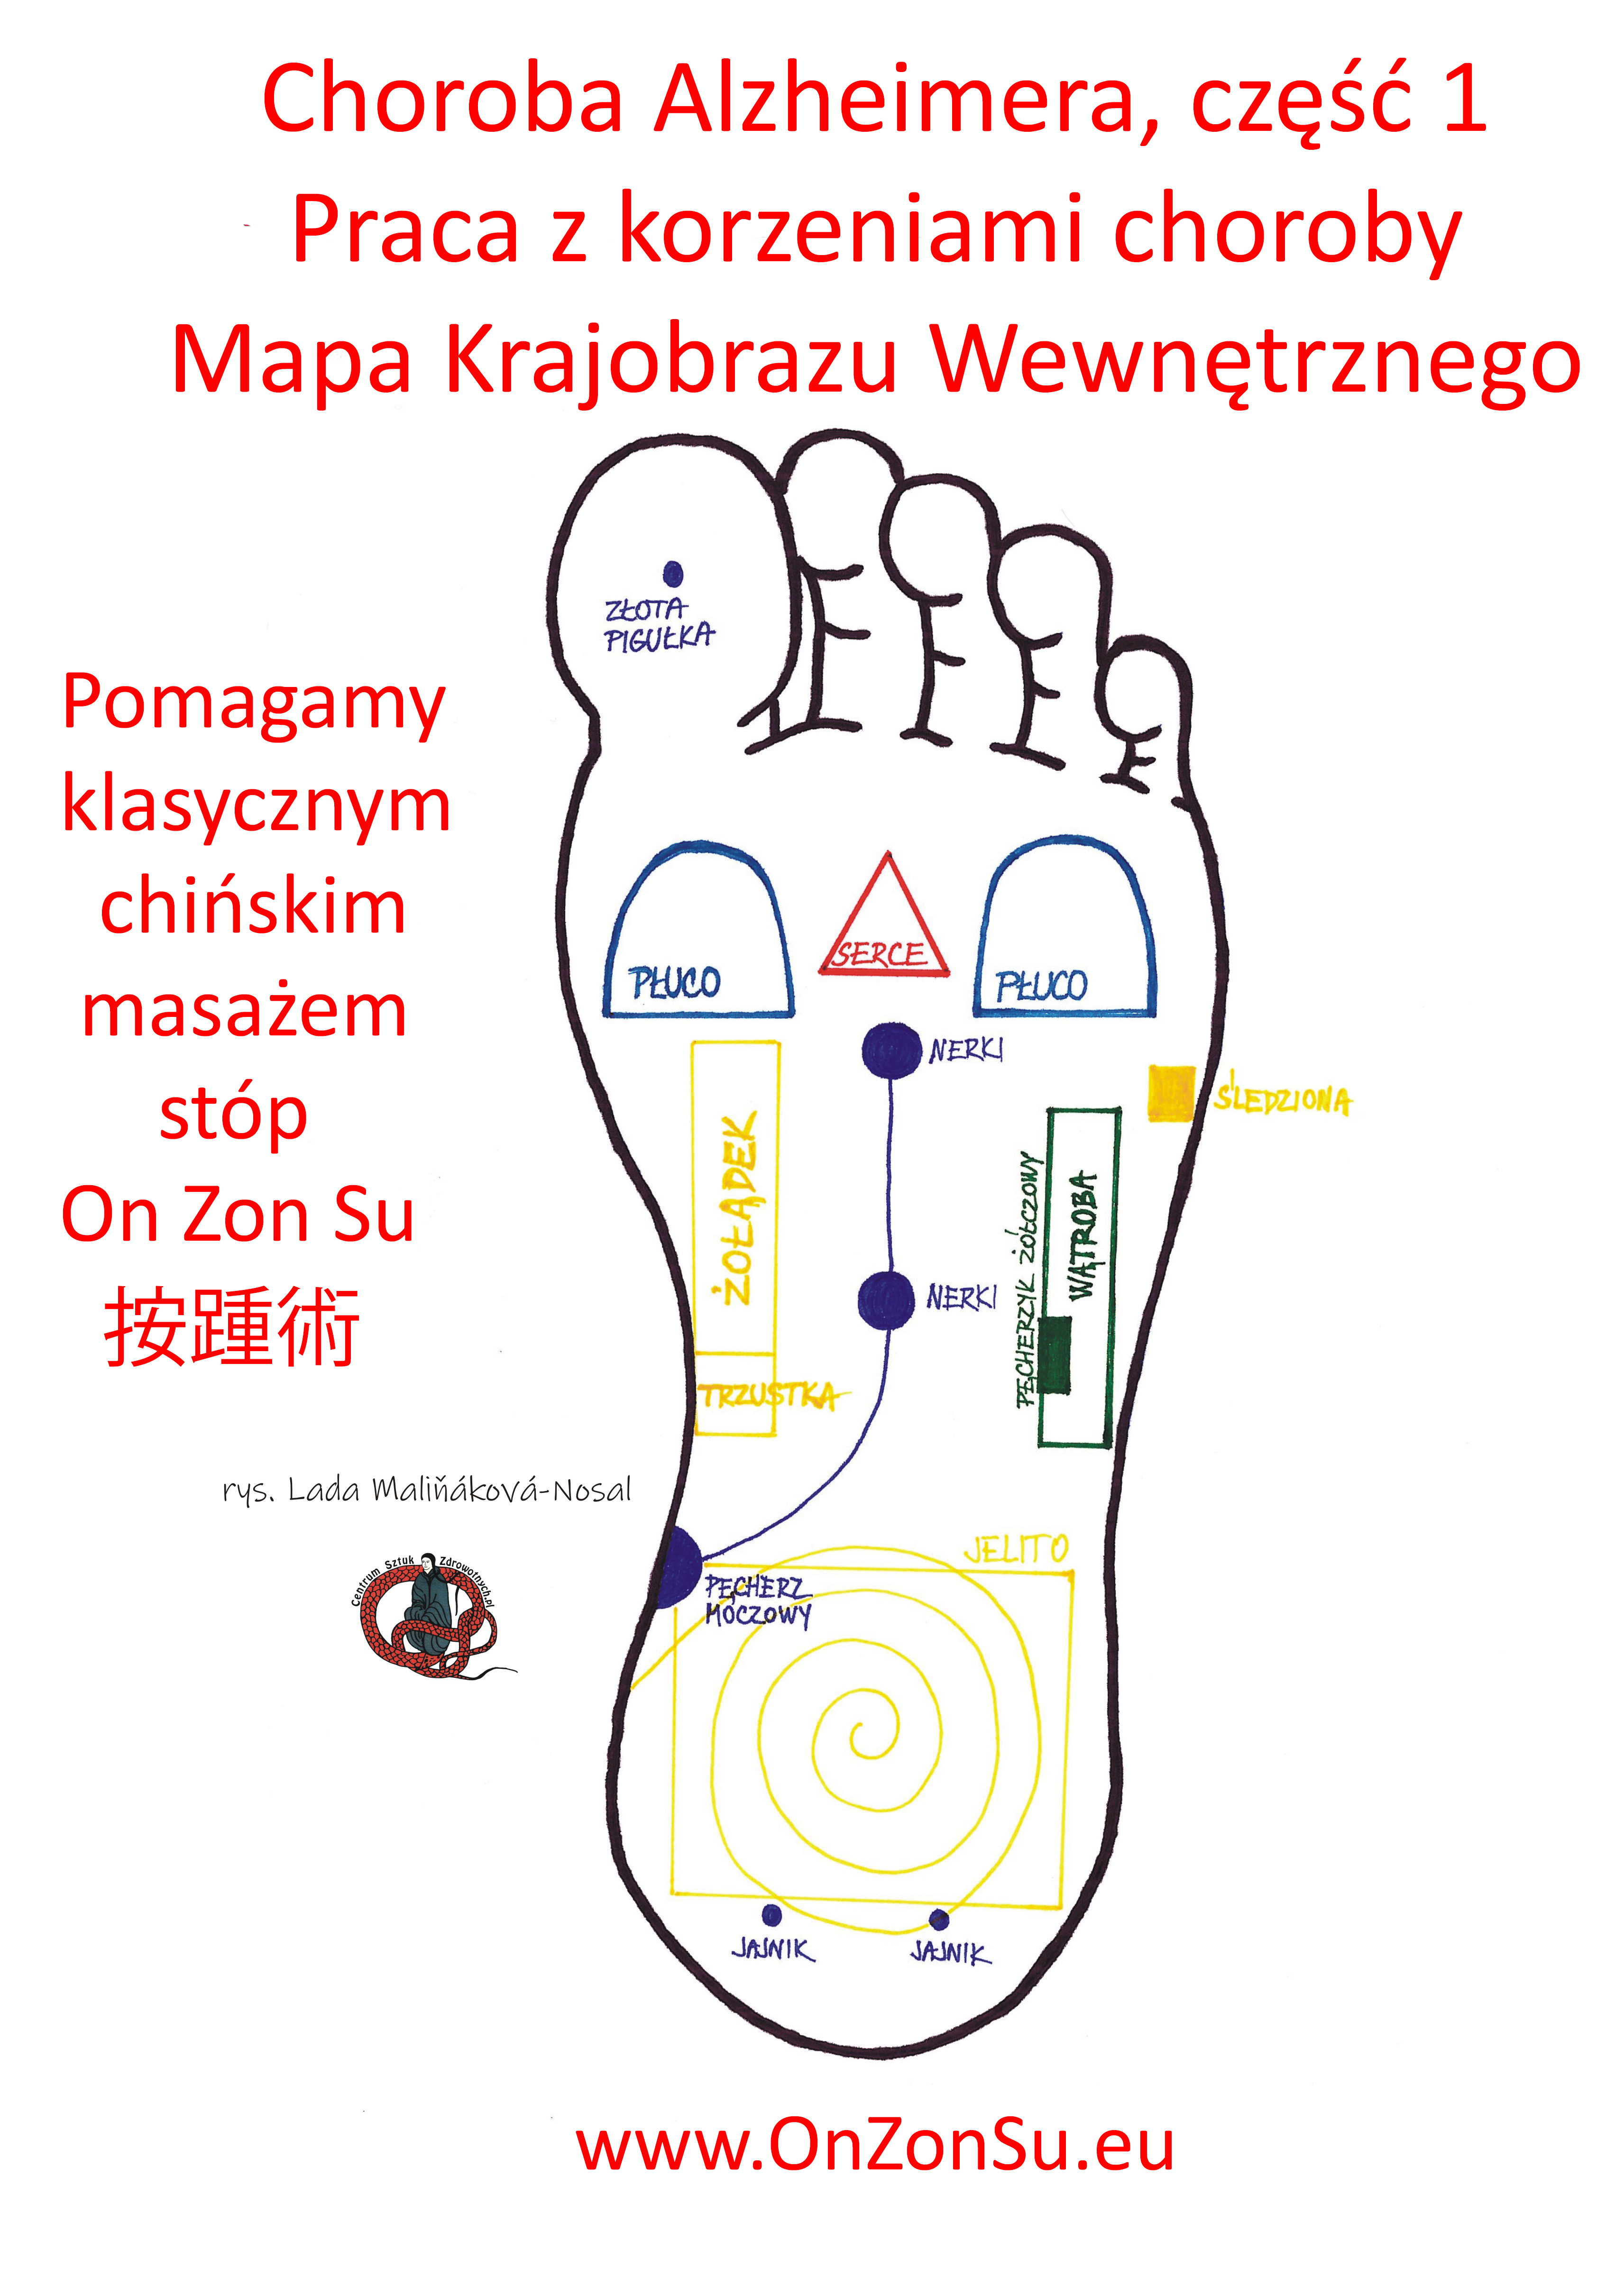 Kurs masażu stóp On Zon Su, Szkolenia refleksologii stóp - Choroba Alzheimera, część 1. Praca z korzeniami choroby, Mapa Krajobrazu Wewnętrznego MEM.jpg